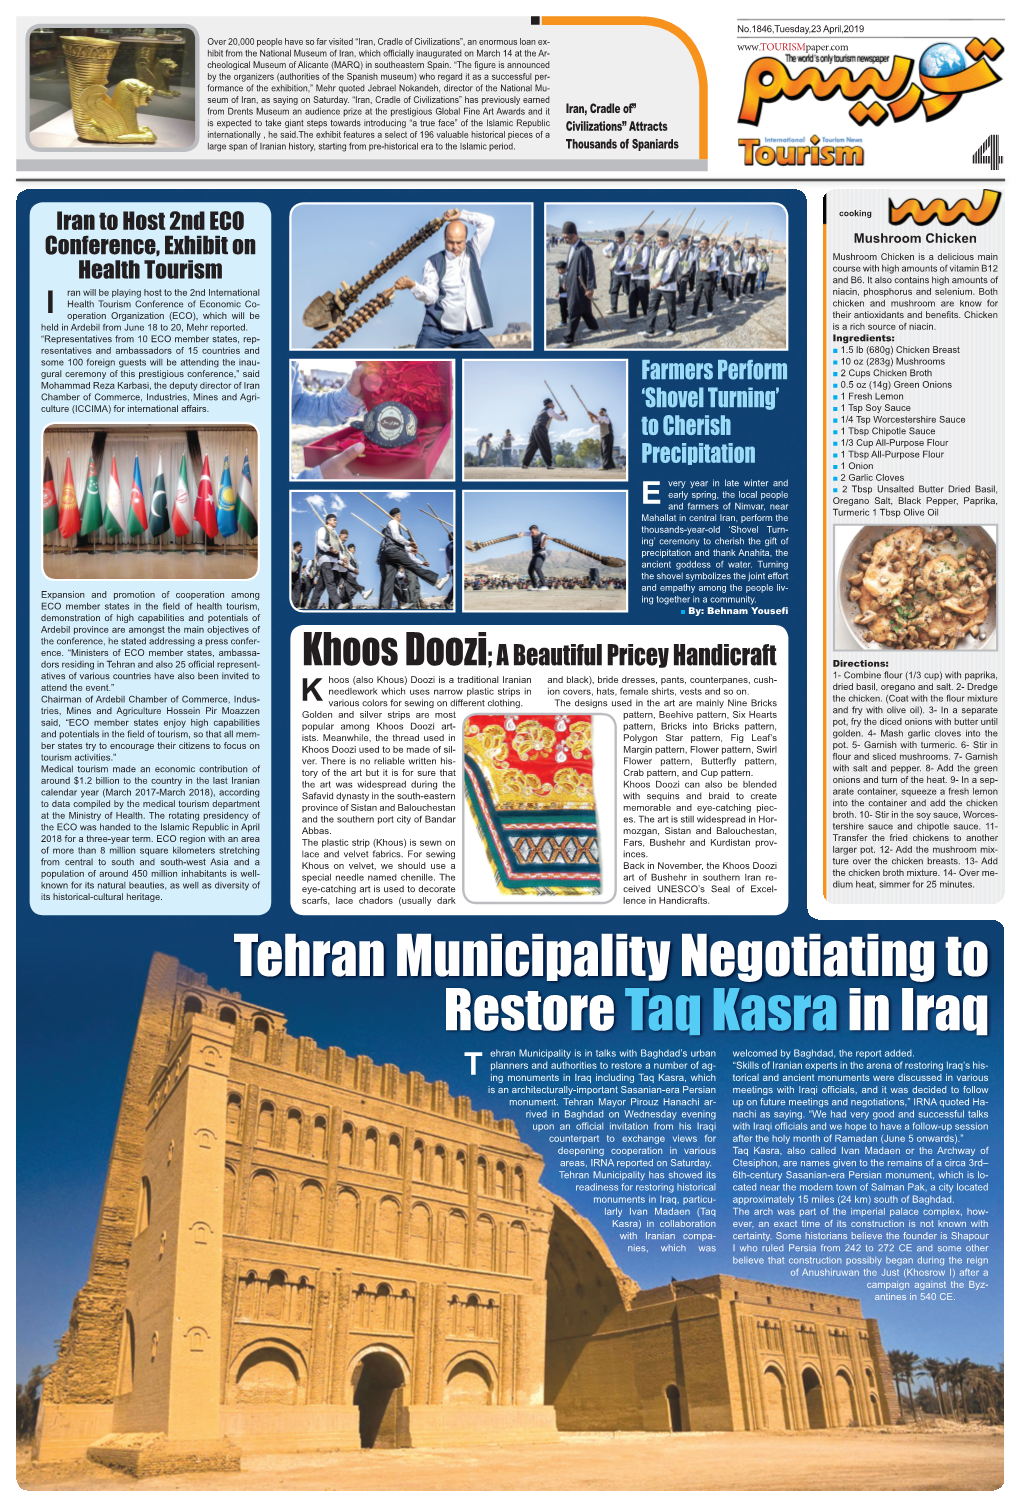 Tehran Municipality Negotiating to Restore Taq Kasrain Iraq